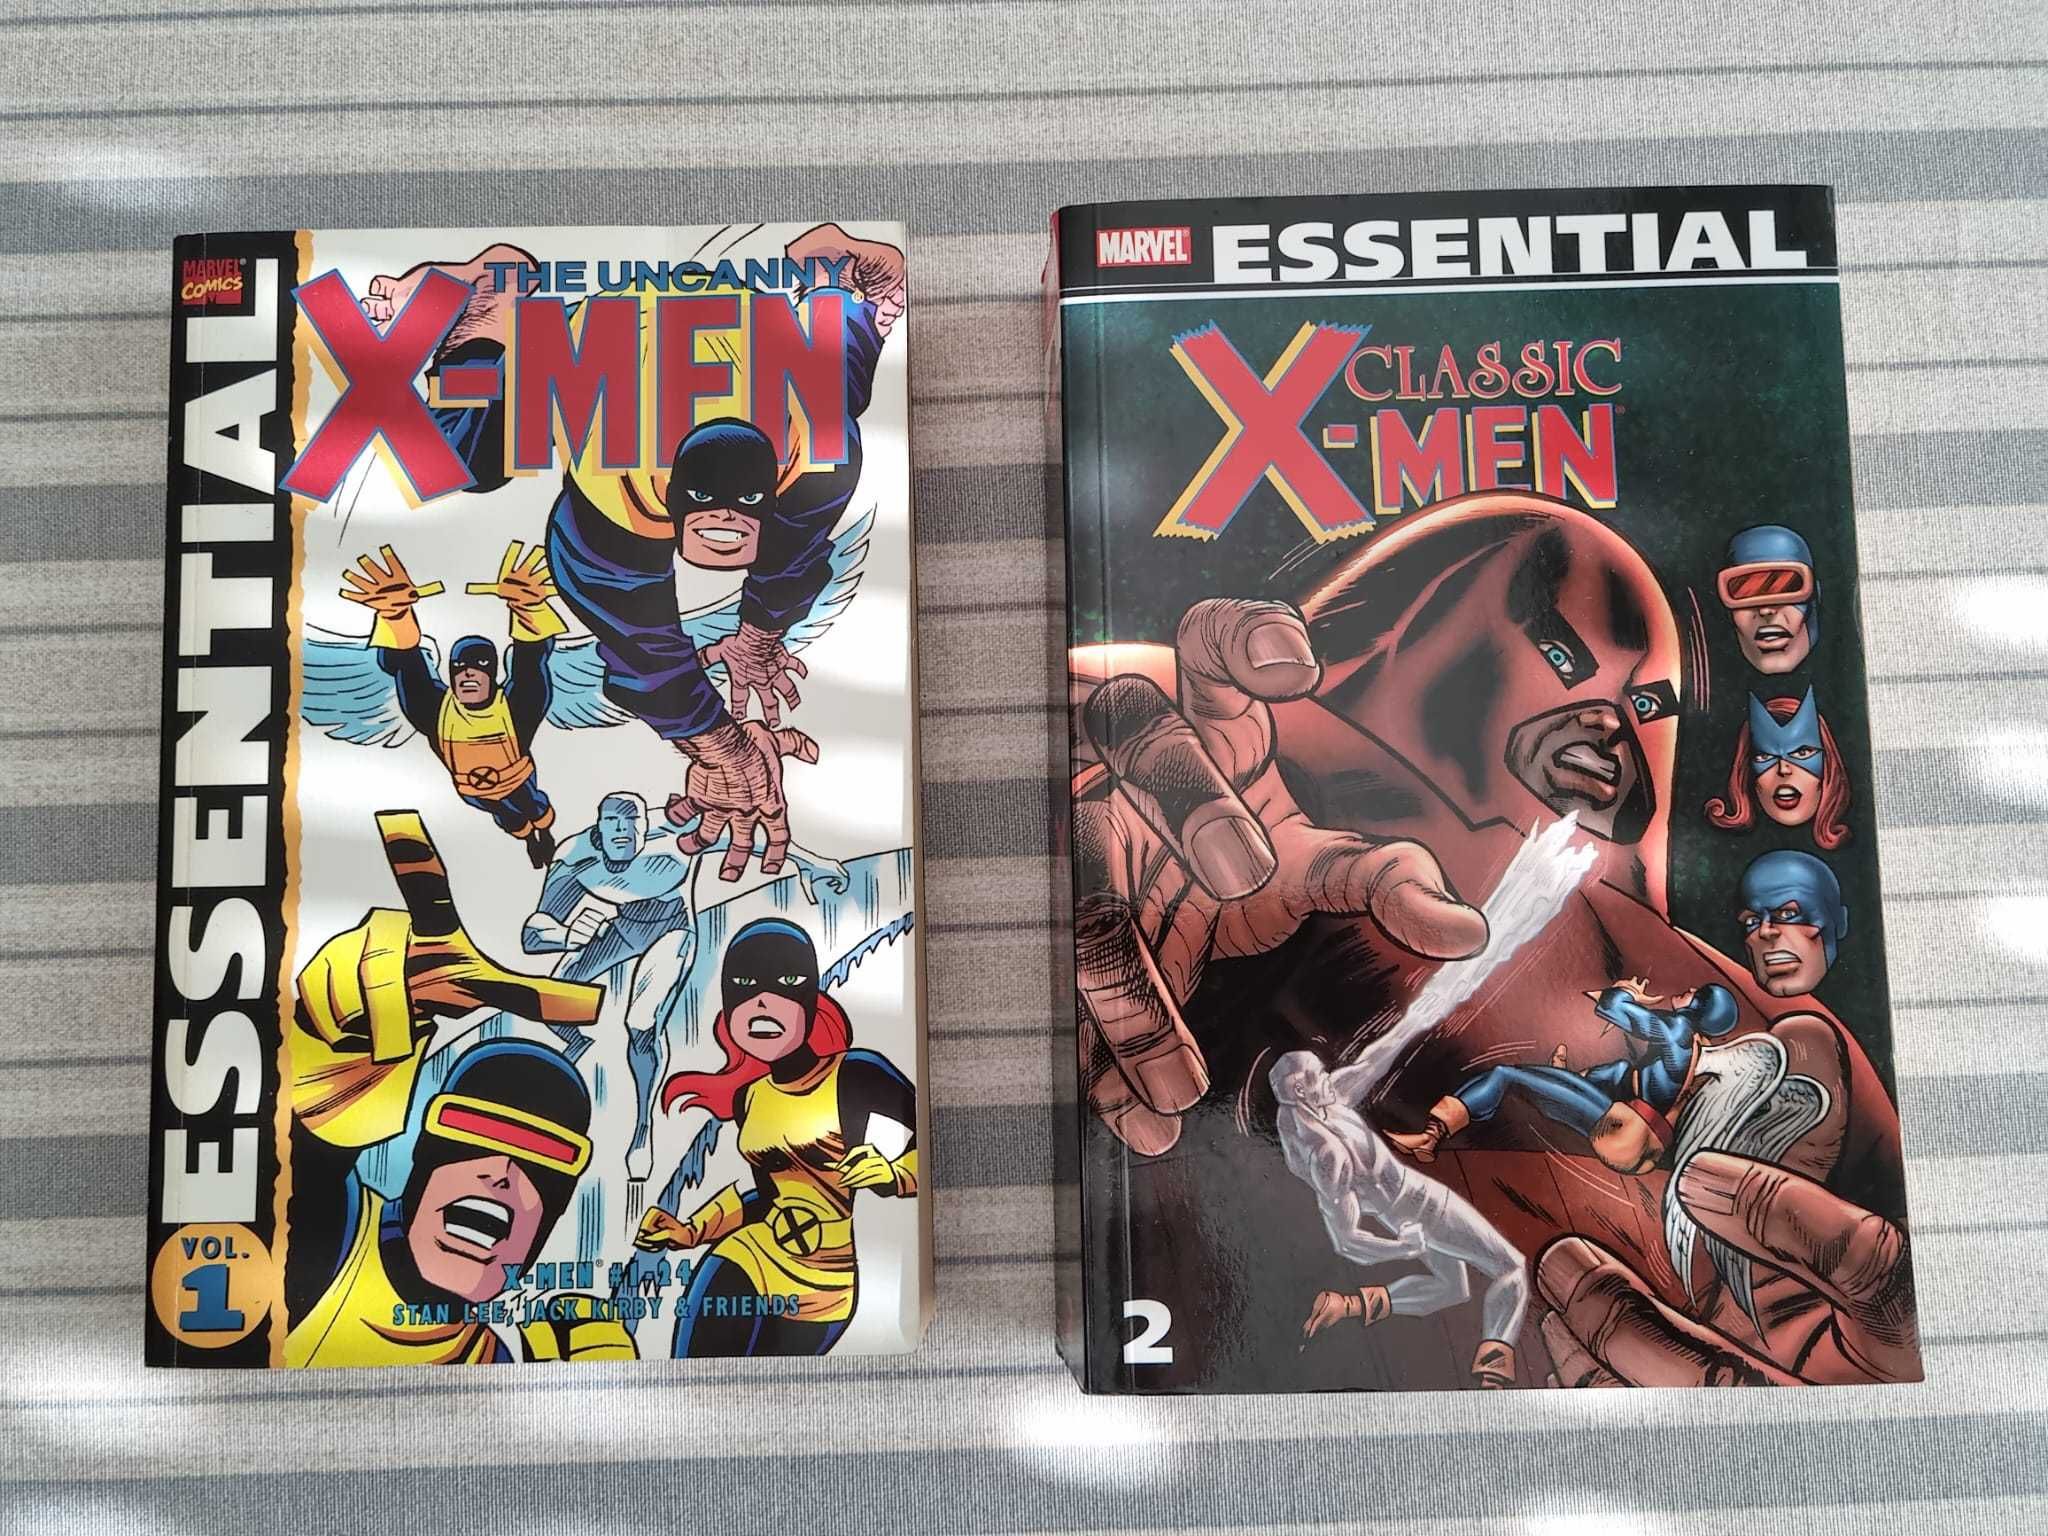 Livros de banda desenhada comics Marvel, DC, Image, Dark horse, etc